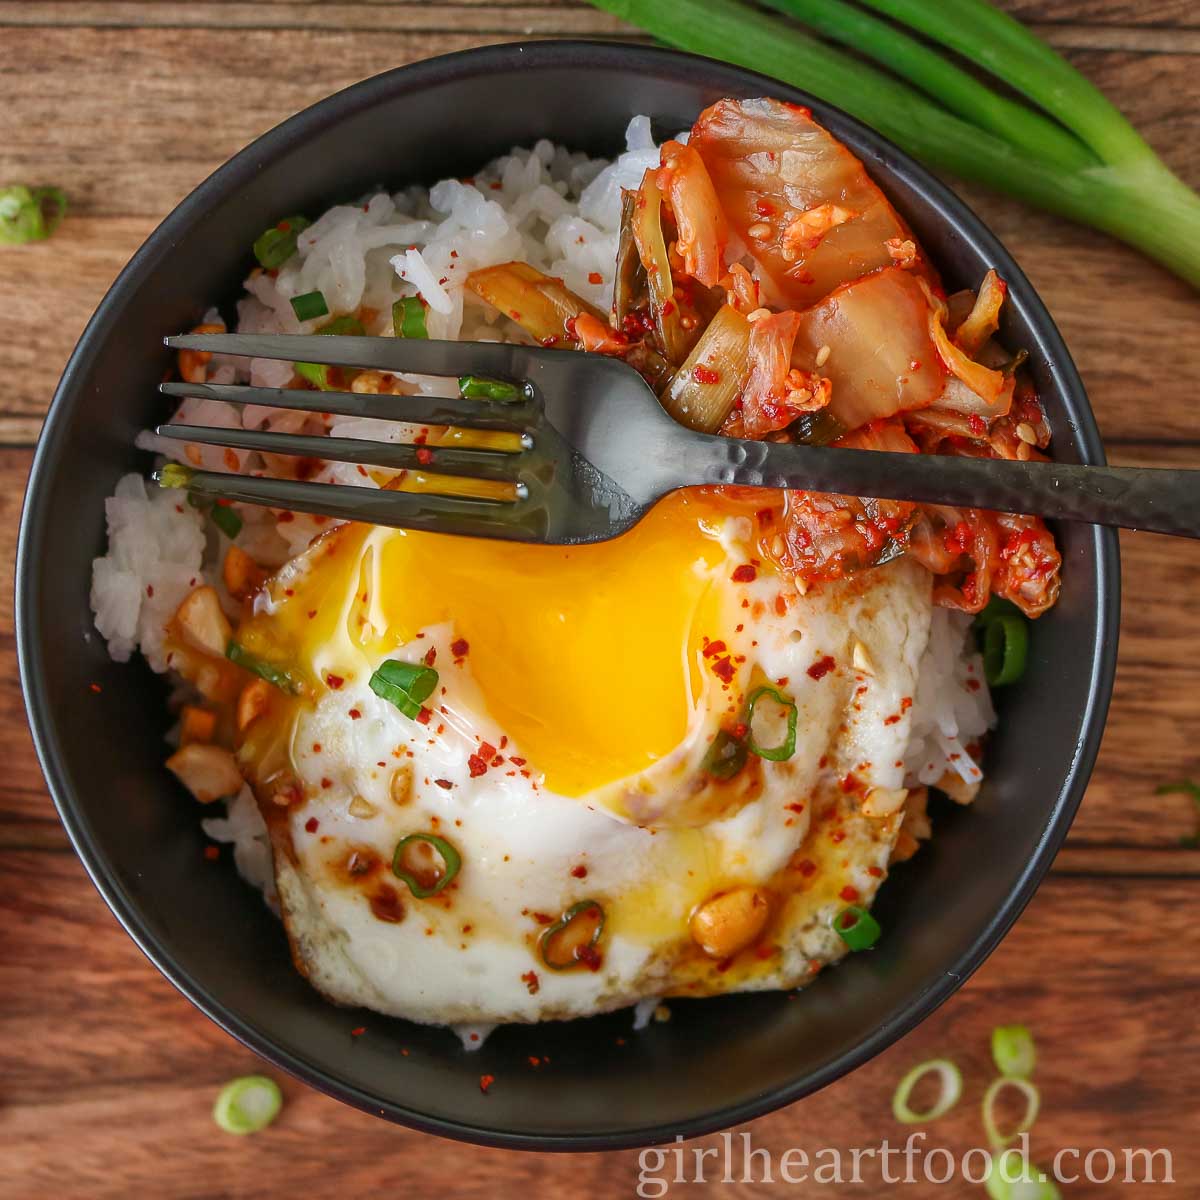 https://girlheartfood.com/wp-content/uploads/2021/04/Easy-Egg-Rice-Bowl-Recipe.jpg